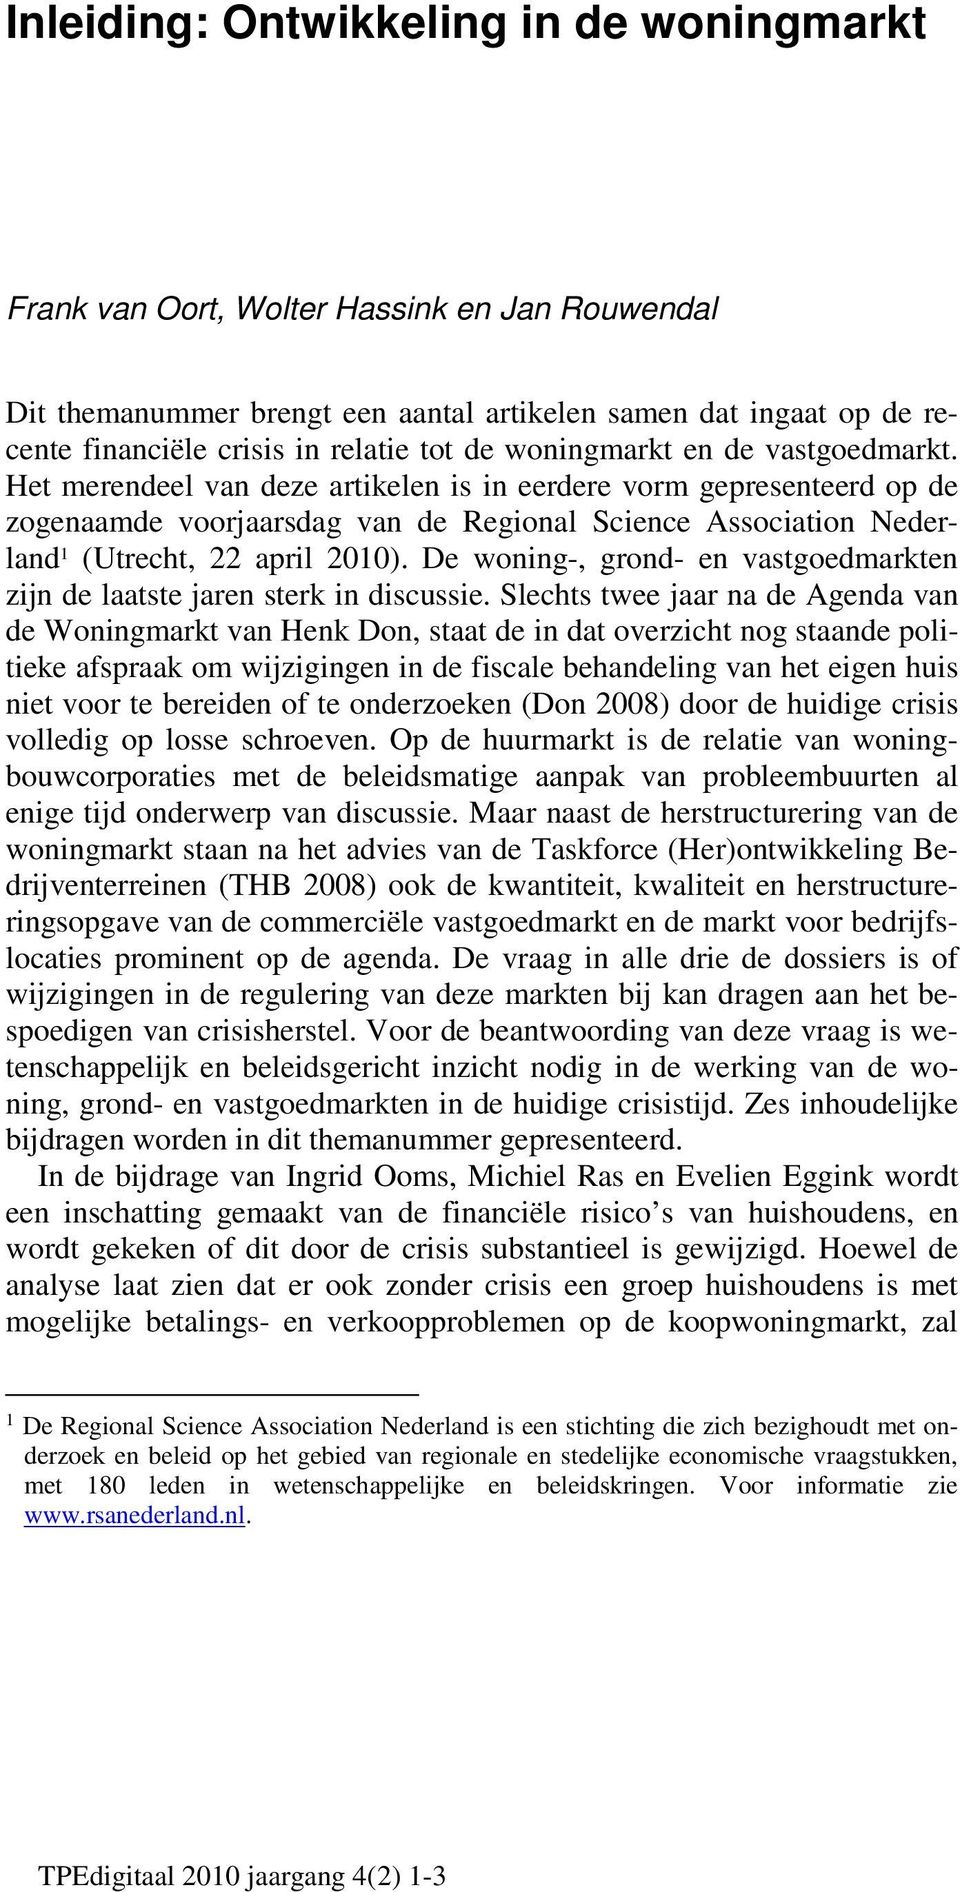 Het merendeel van deze artikelen is in eerdere vorm gepresenteerd op de zogenaamde voorjaarsdag van de Regional Science Association Nederland 1 (Utrecht, 22 april 2010).